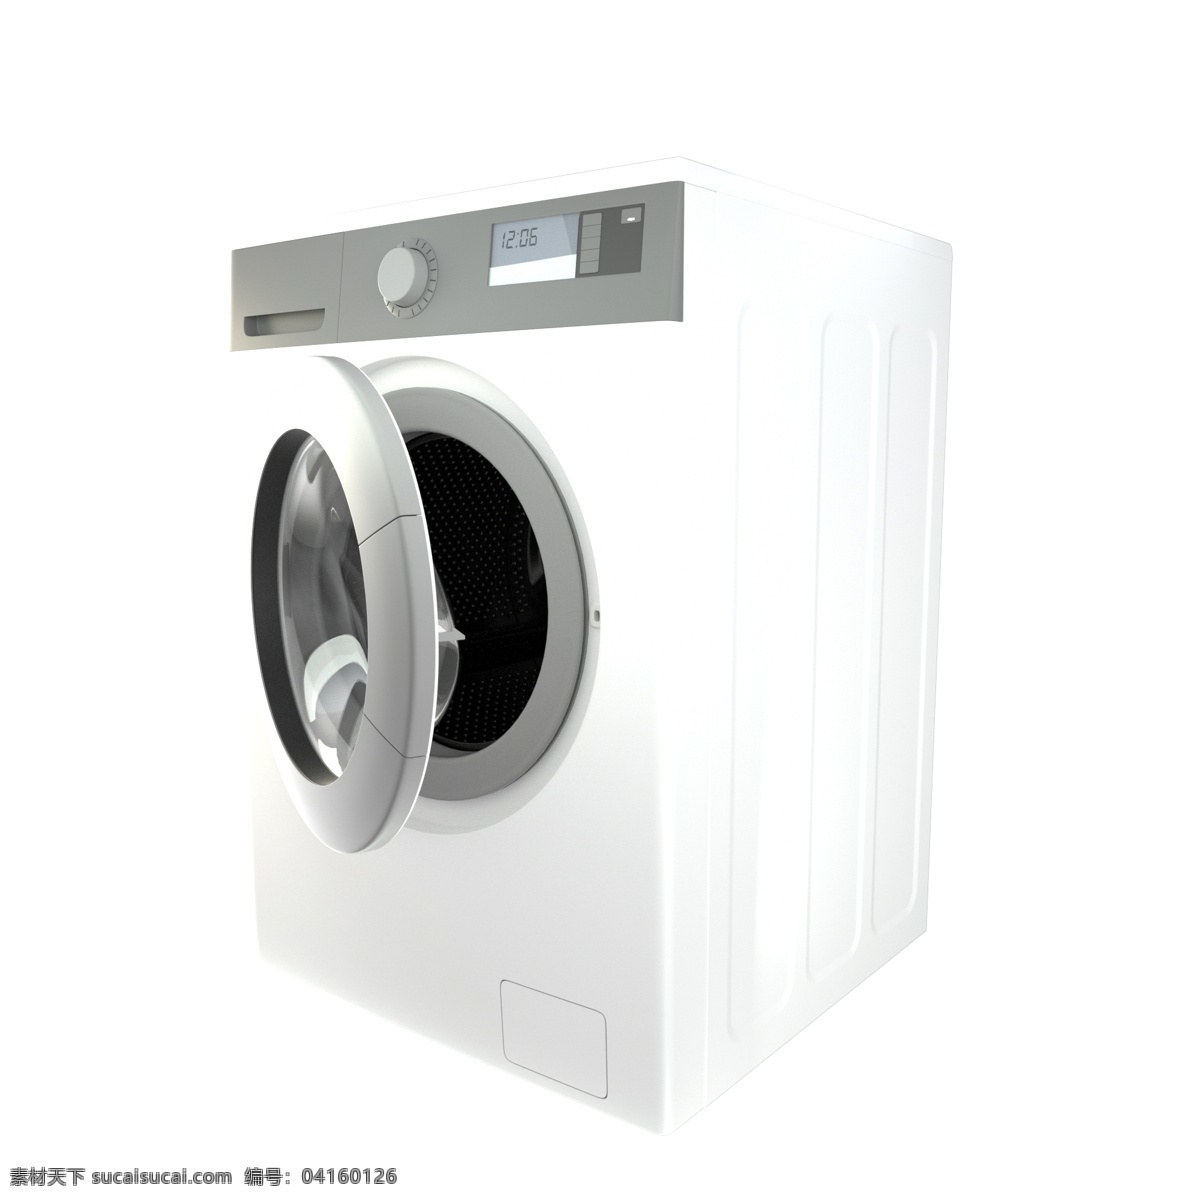 家用 全自动 洗衣机 c4d 白色金属 全自动洗衣机 洗衣服 洗衣 滚筒洗衣机 3d写实